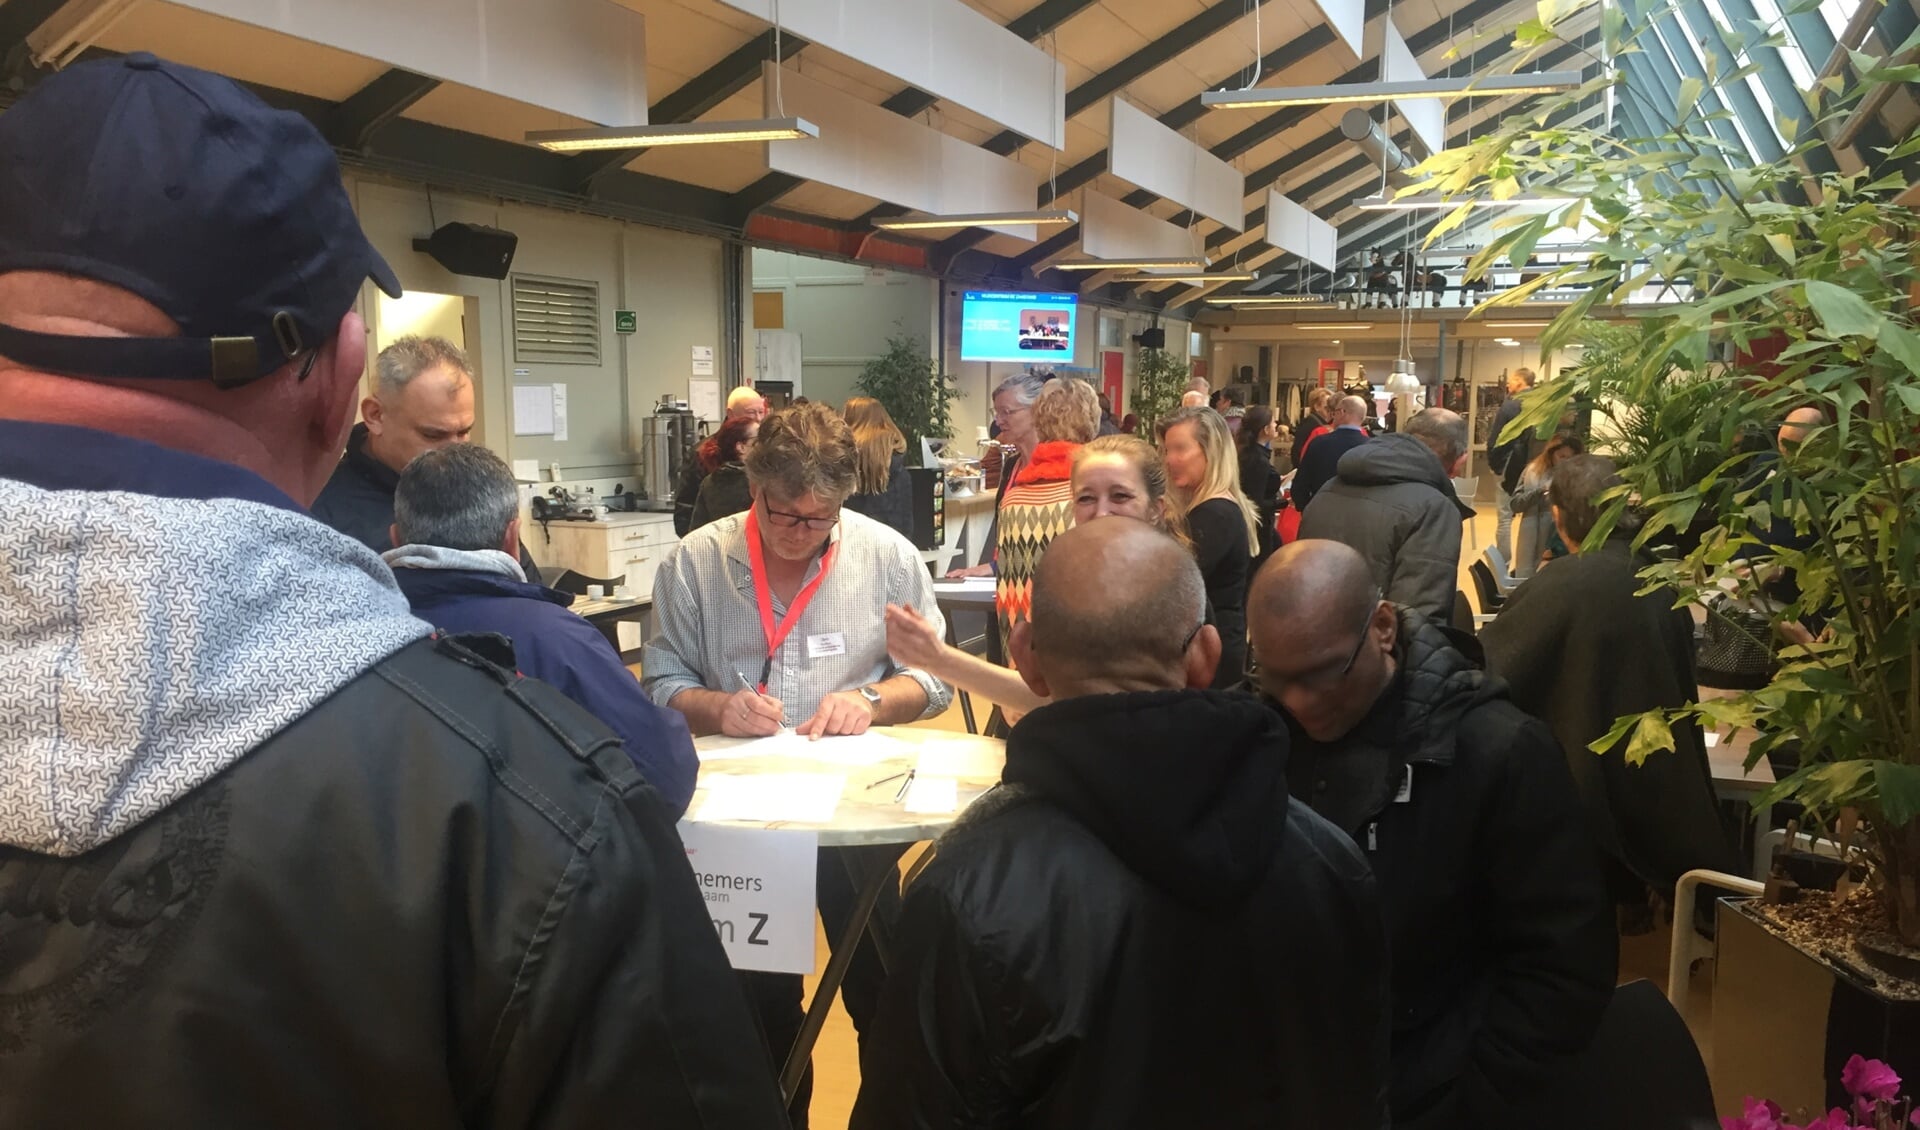 Maandelijks doen honderd werkzoekende vijftigplussers nieuwe energie en ideeën op bij Netwerkcafé Hoorn.